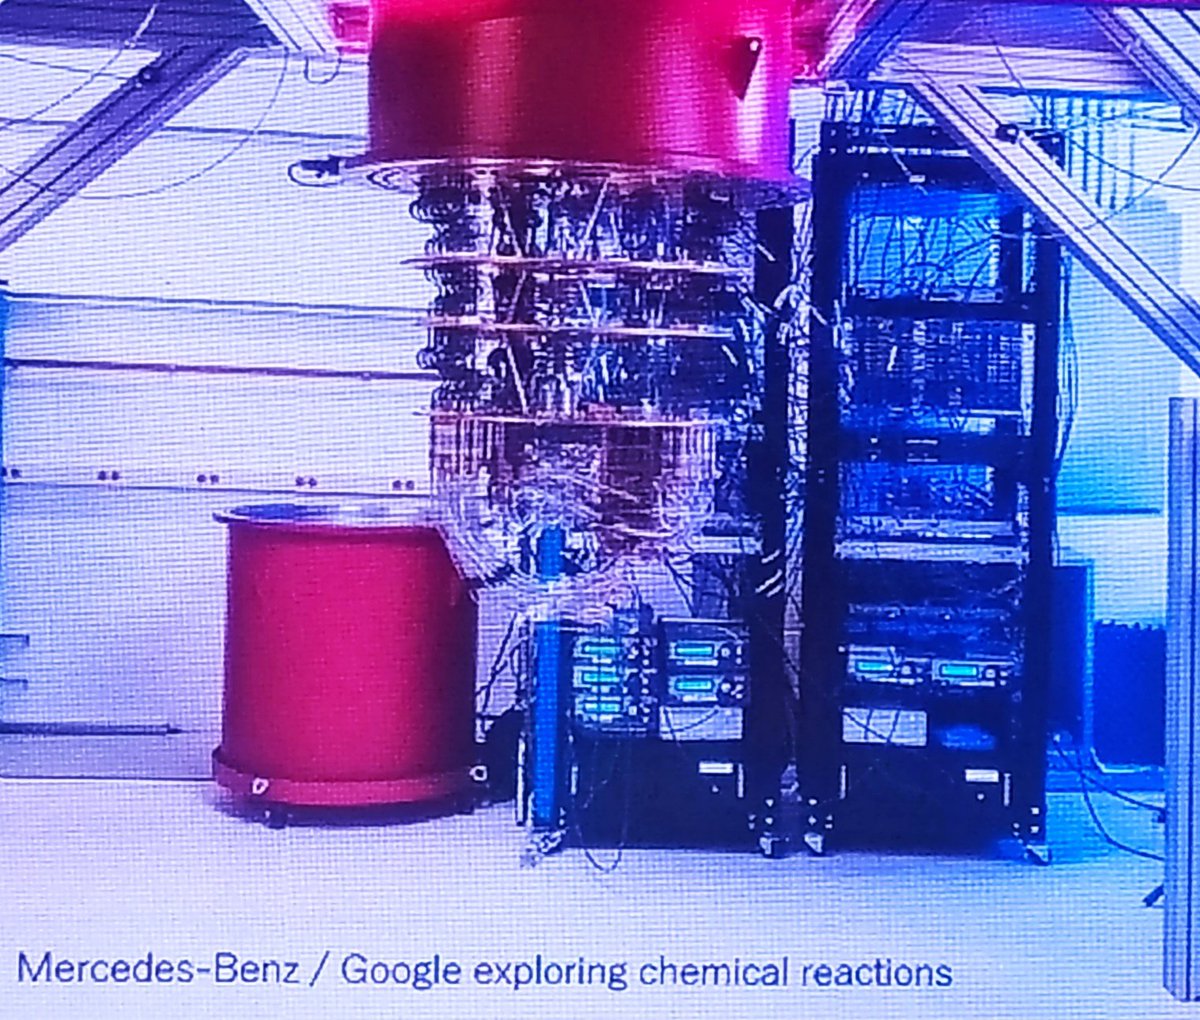 La #colaboraciónempresarial Google/Mercedes Benz en la investigación de computación cuántica es clave hacia la innovación y el desarrollo de nuevas tecnologías. Emocionante ver cómo cambiará el mundo y cómo podemos prepararnos #computacióncuántica #innovacióntecnológica🤓🤓